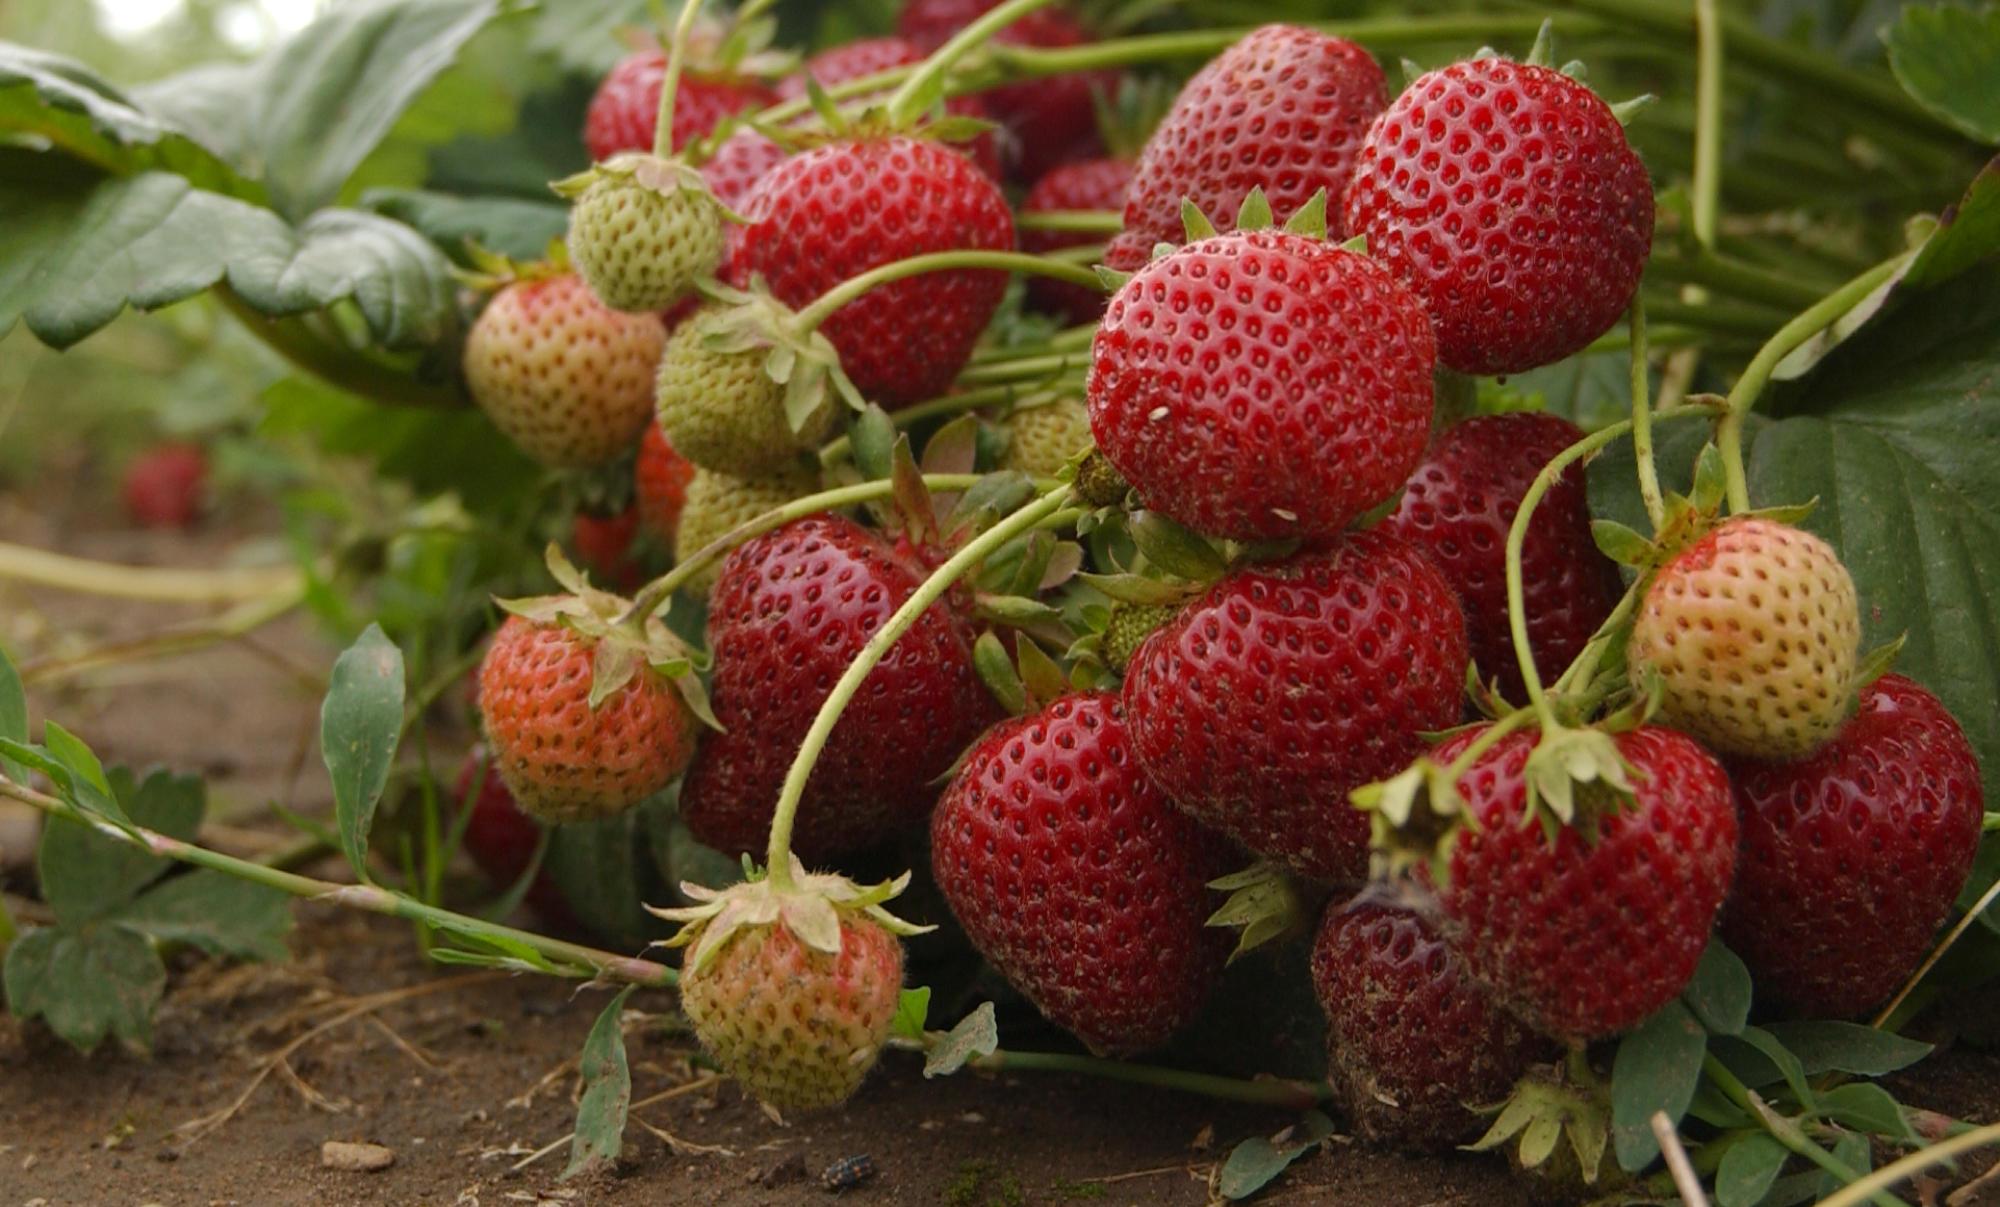 Growing Strawberries in Your Home Garden